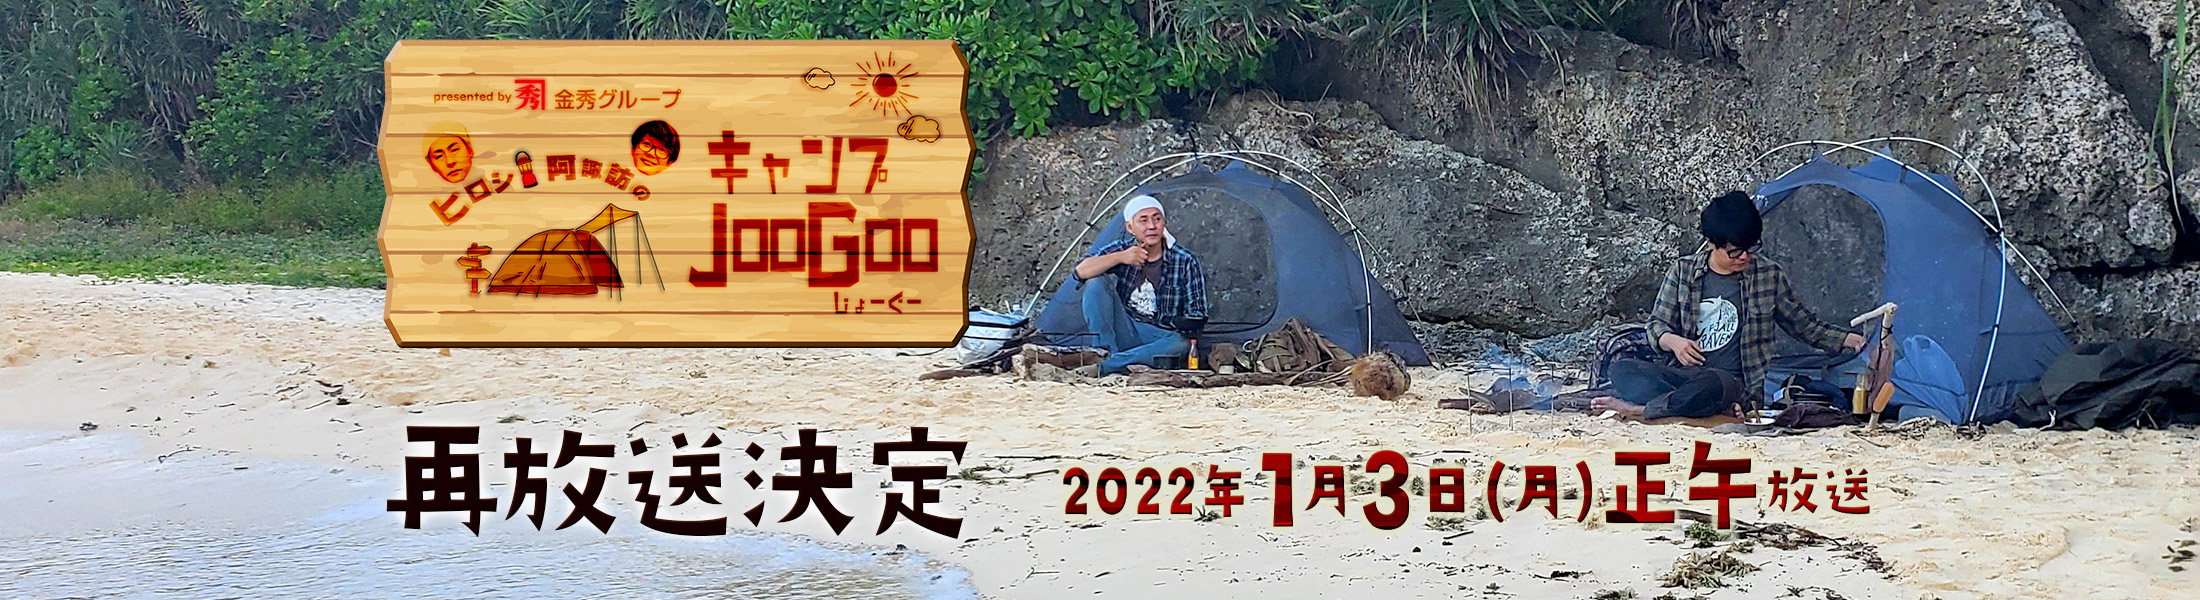 ヒロシ・阿諏訪のキャンプJooGoo